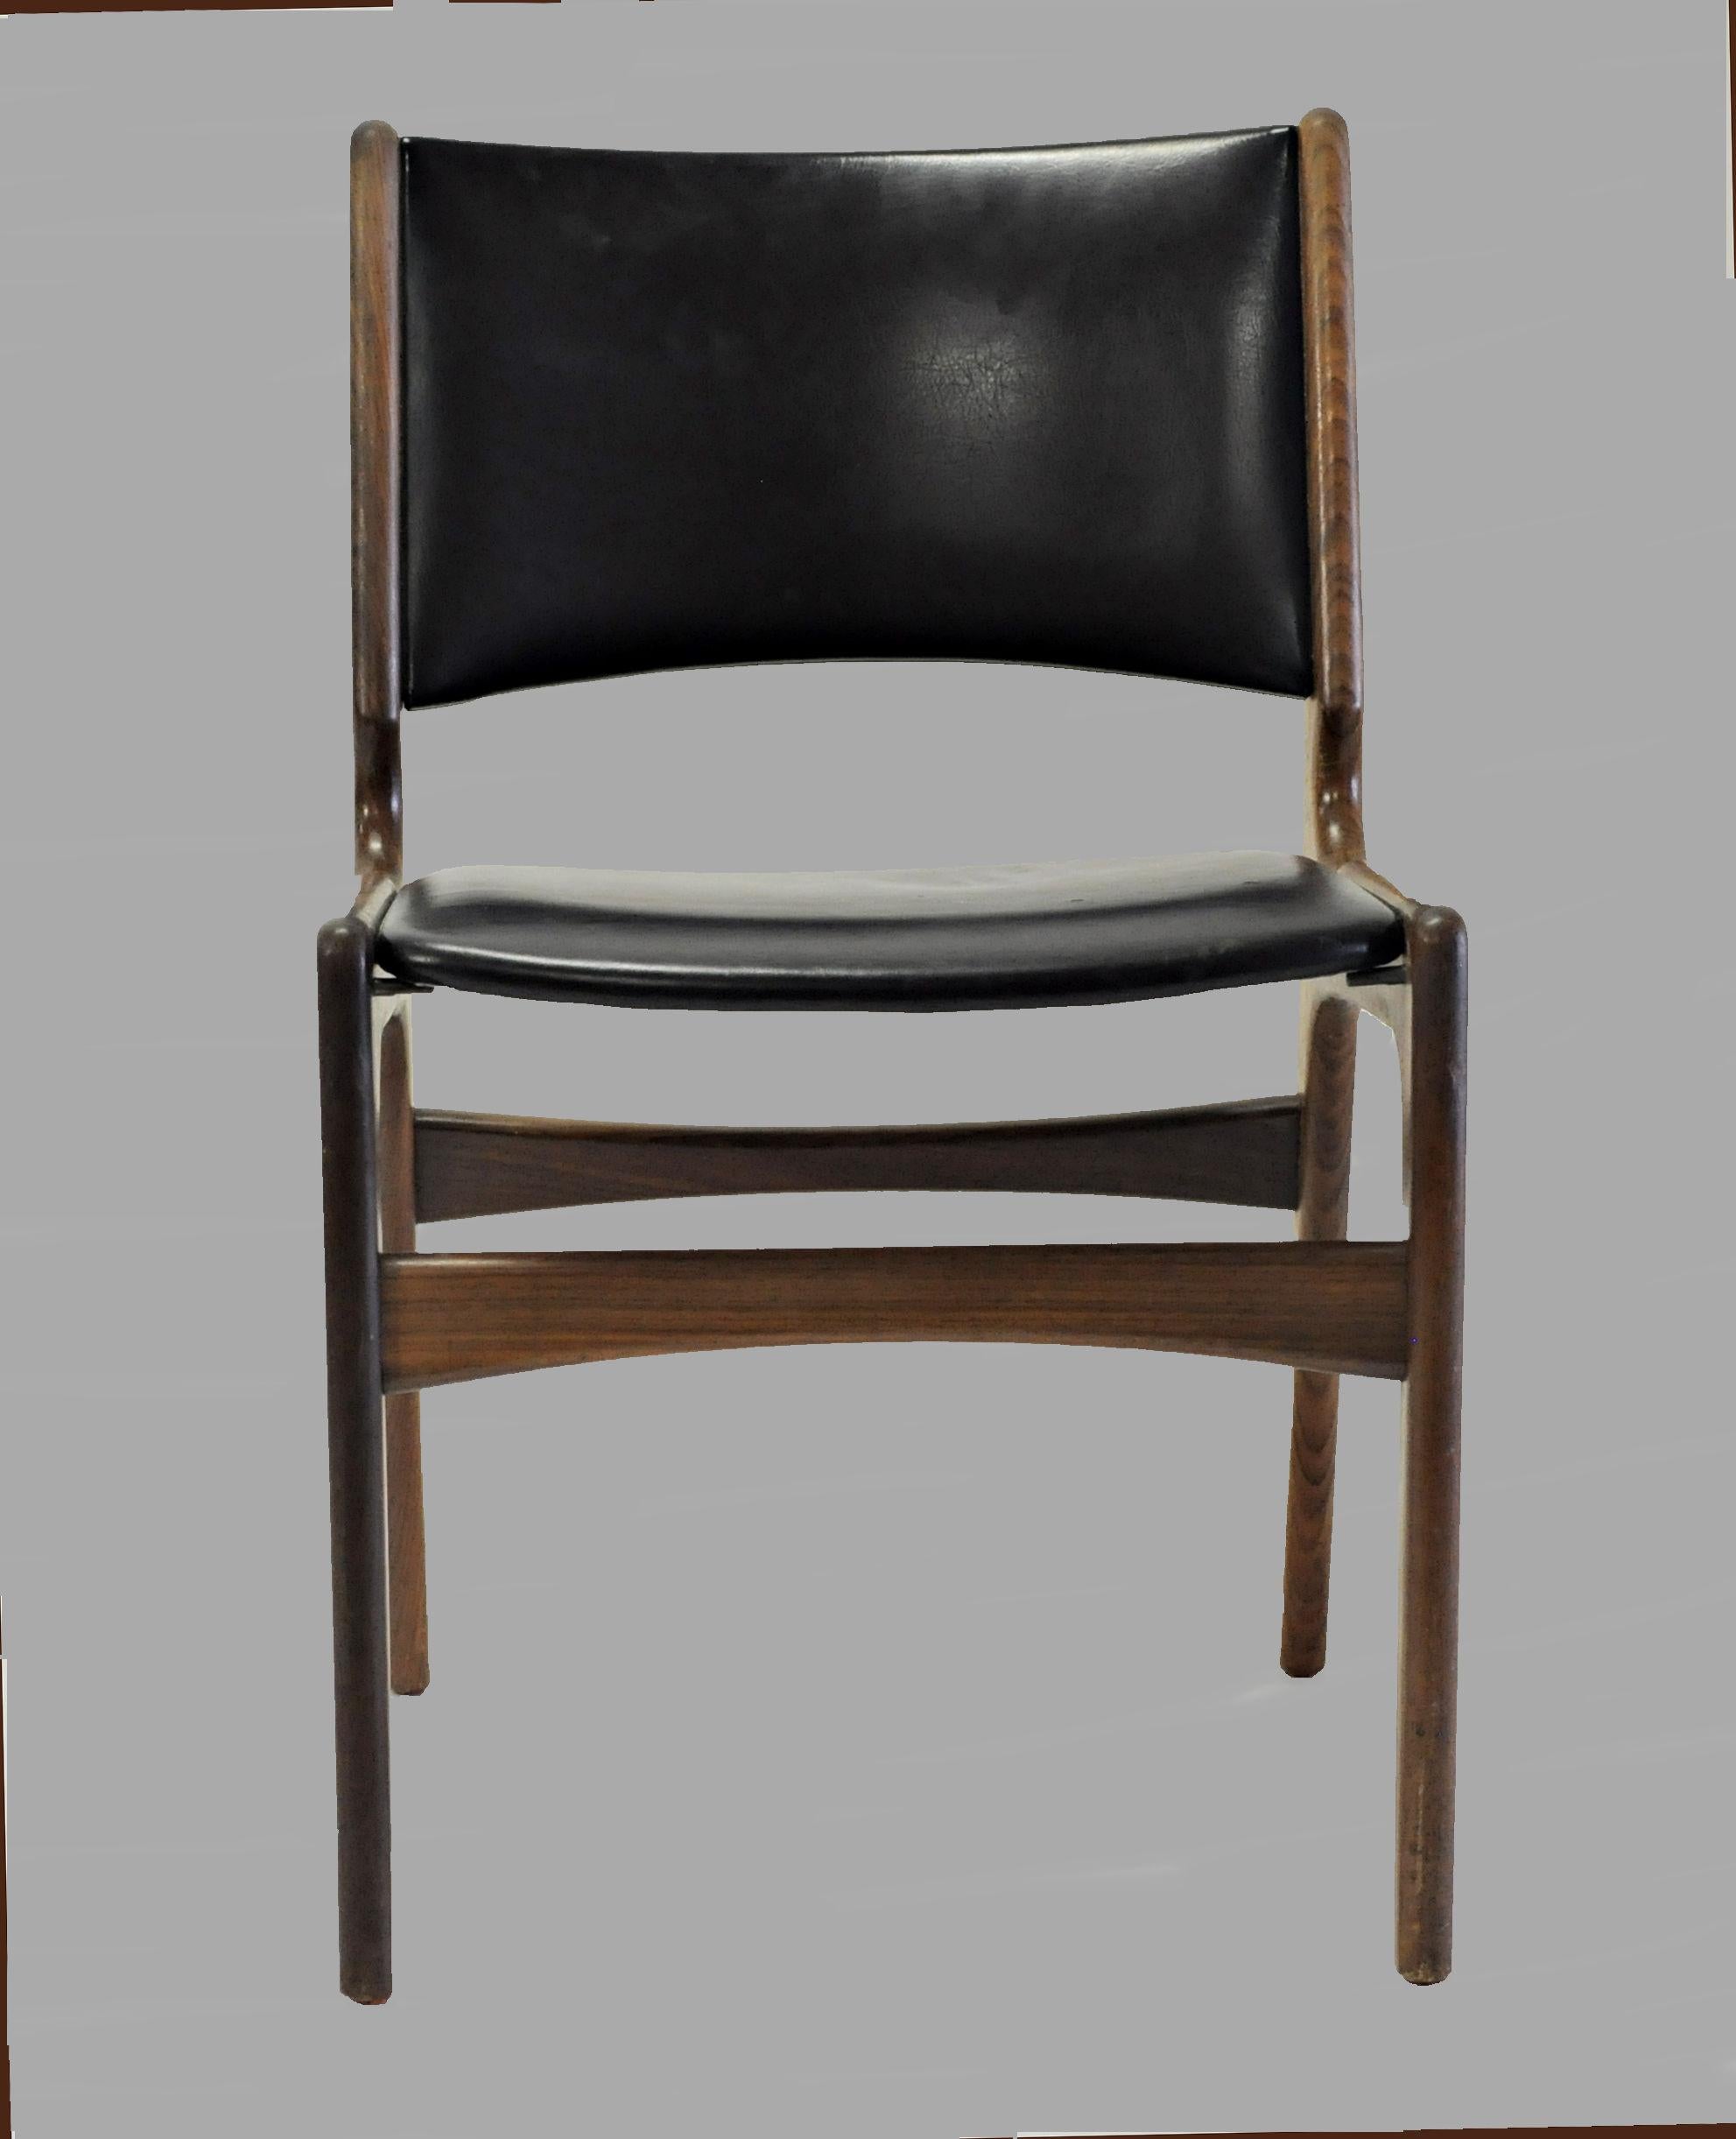 Sechs Esszimmerstühle von Erik Buch, hergestellt von Oddense Maskinsnedkeri.

Die Stühle haben ein massives Teakholzgestell und zeichnen sich wie alle Stühle von Erik Buchs durch hochwertige Materialien, solide Handwerkskunst, skandinavische